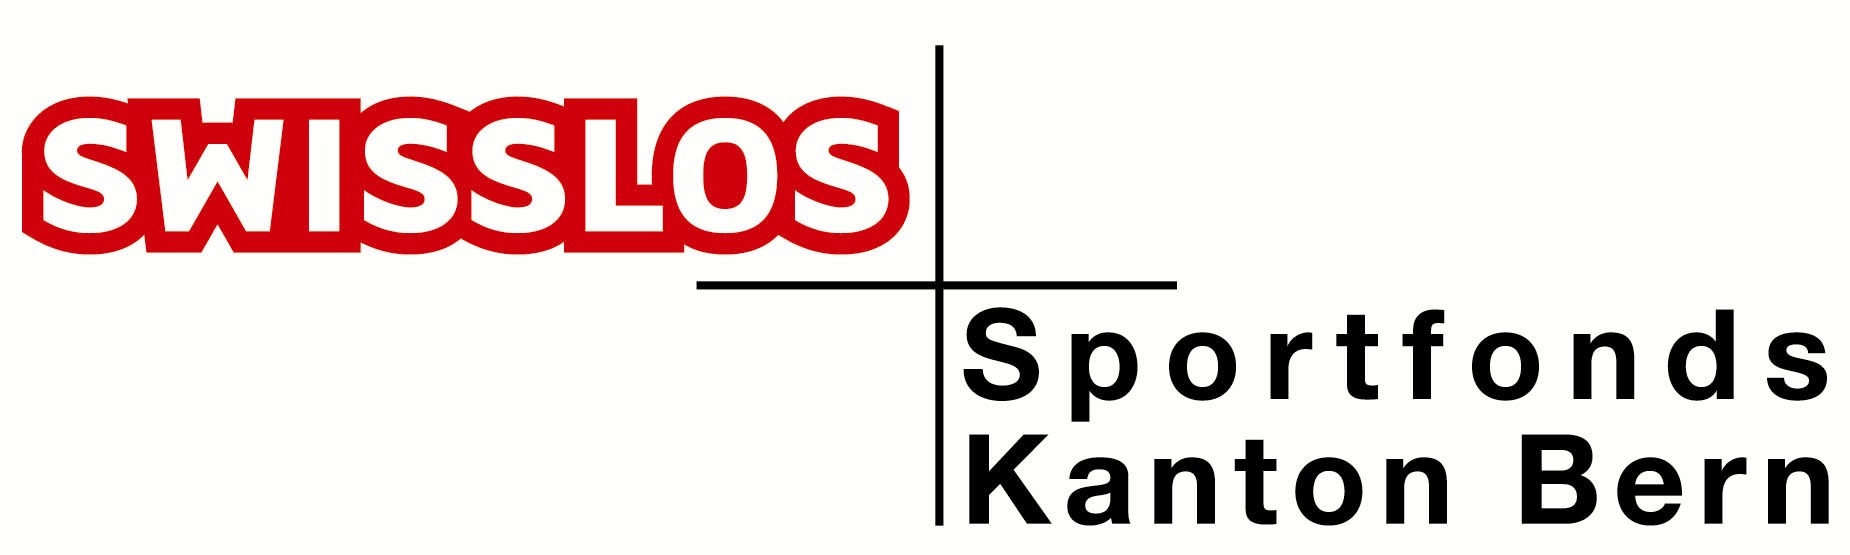 Logo Sportfonds farbig jpg